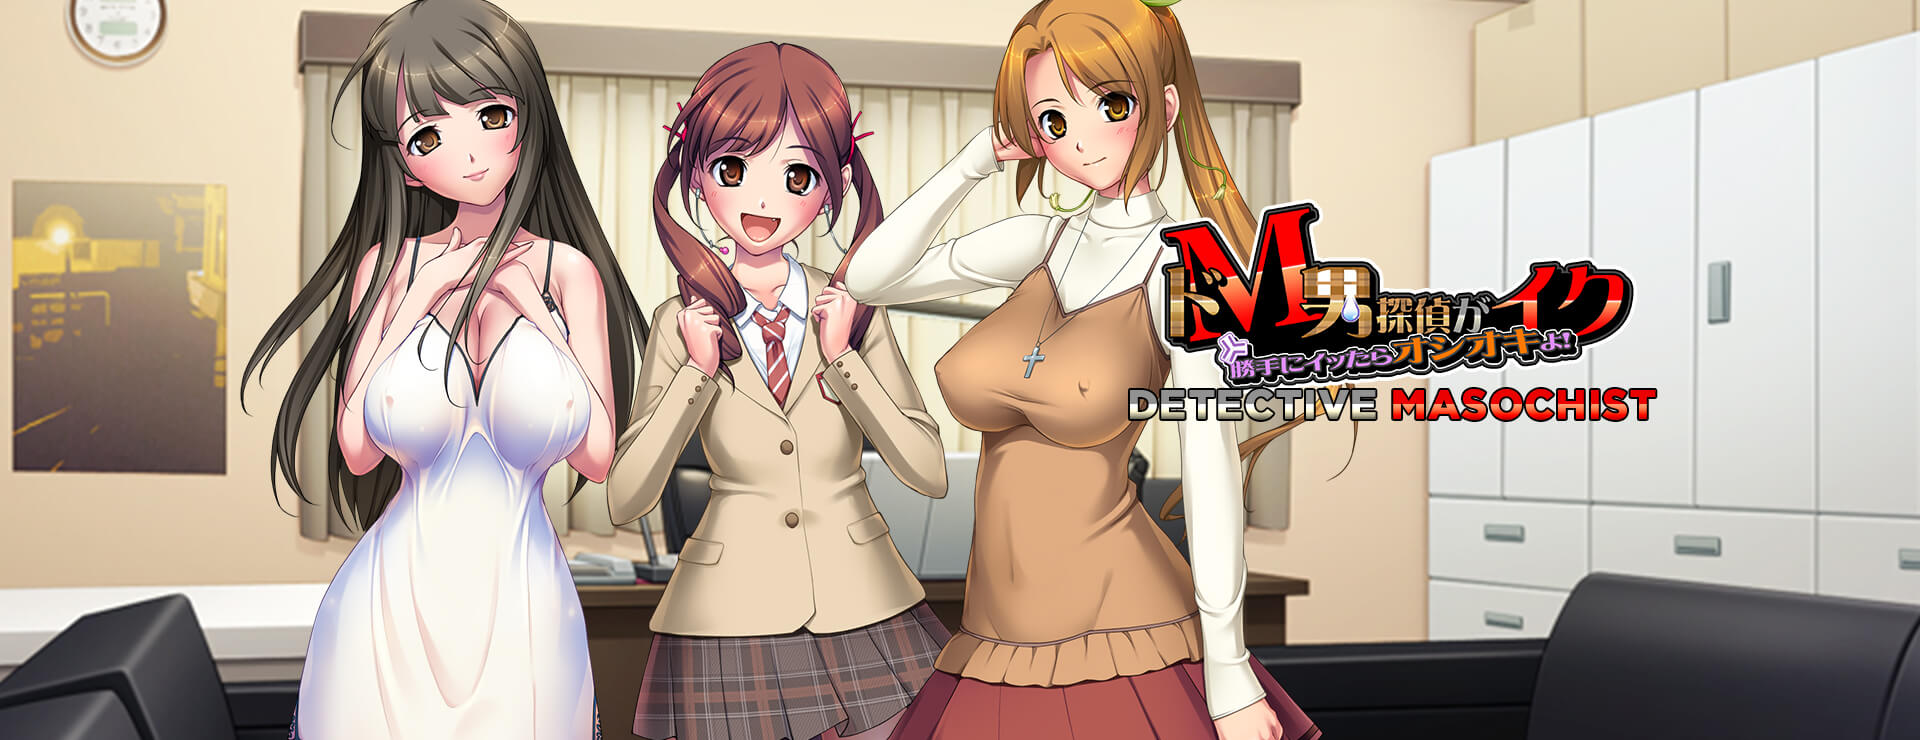 Detective Masochist - Visual Novel Game